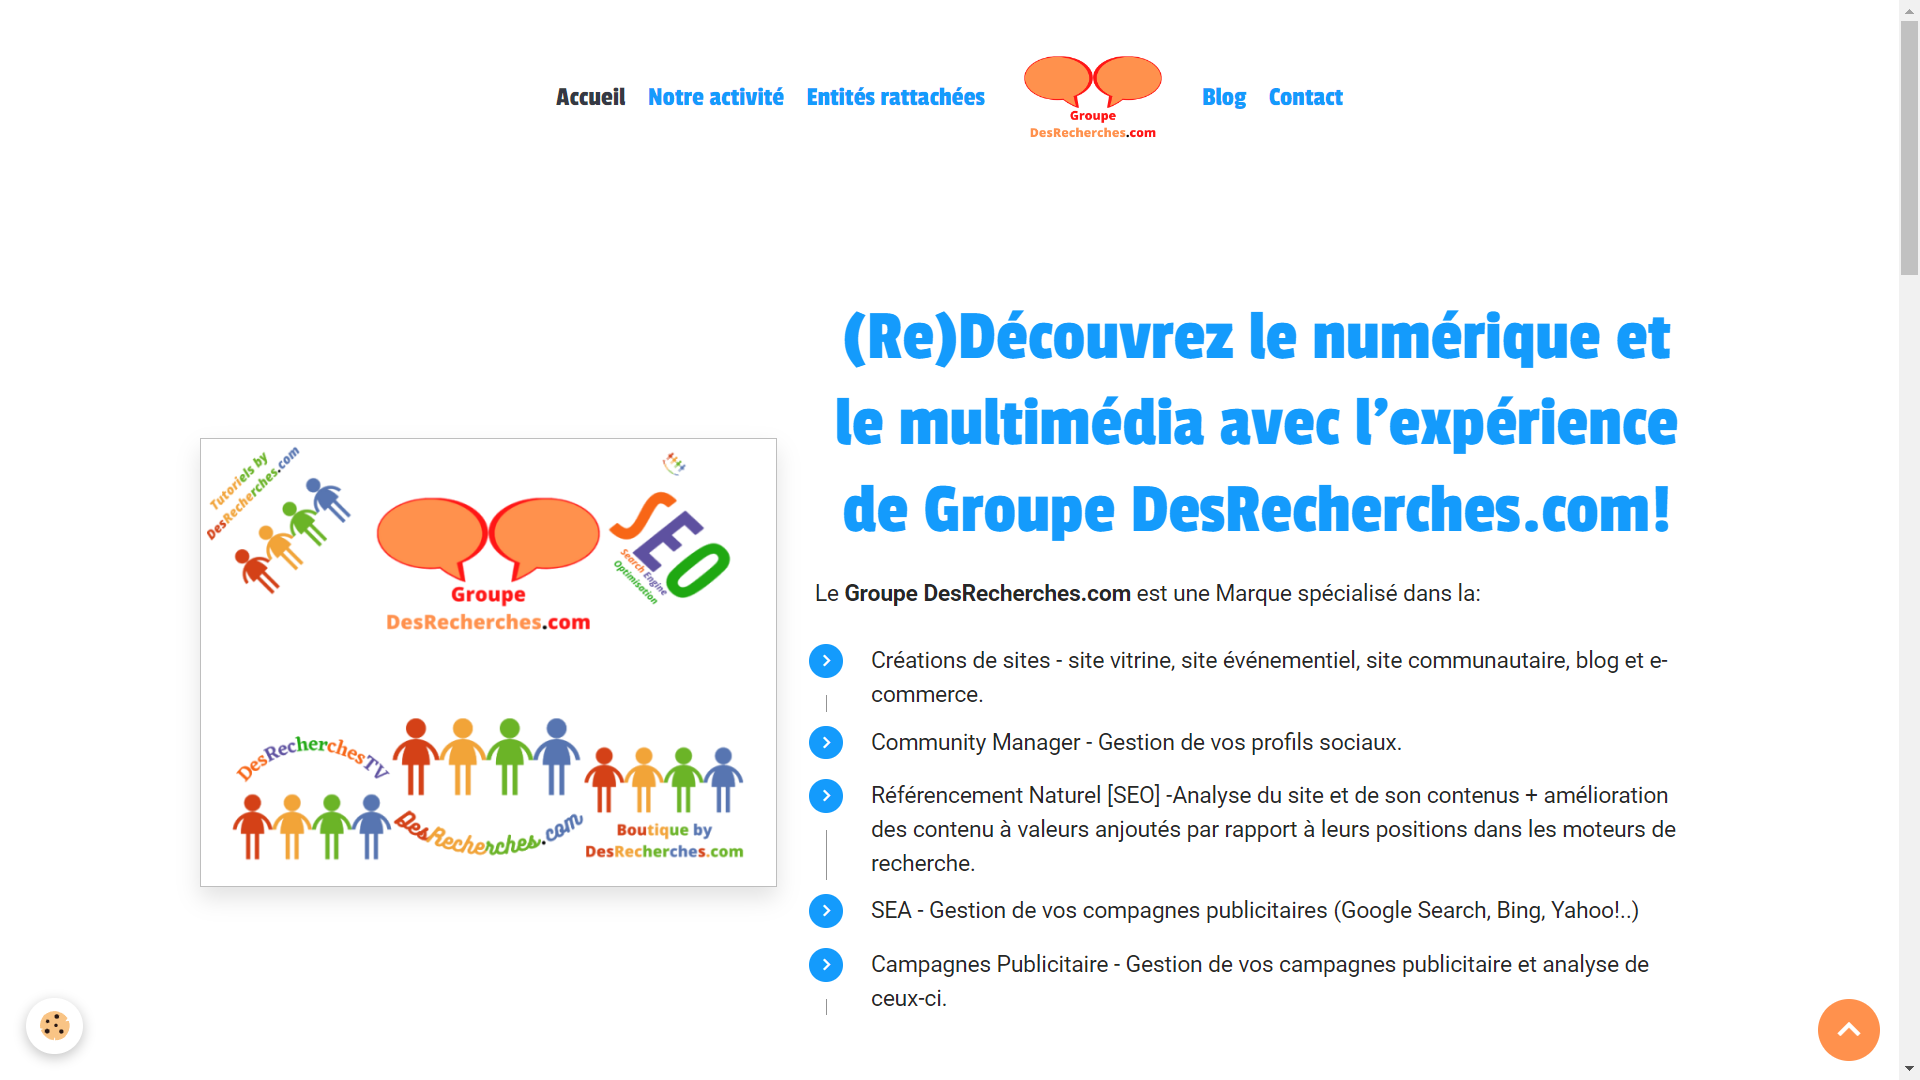 CréaSite, CM, SEO/SEA et campagnes pub - Groupe-DesRecherches.com